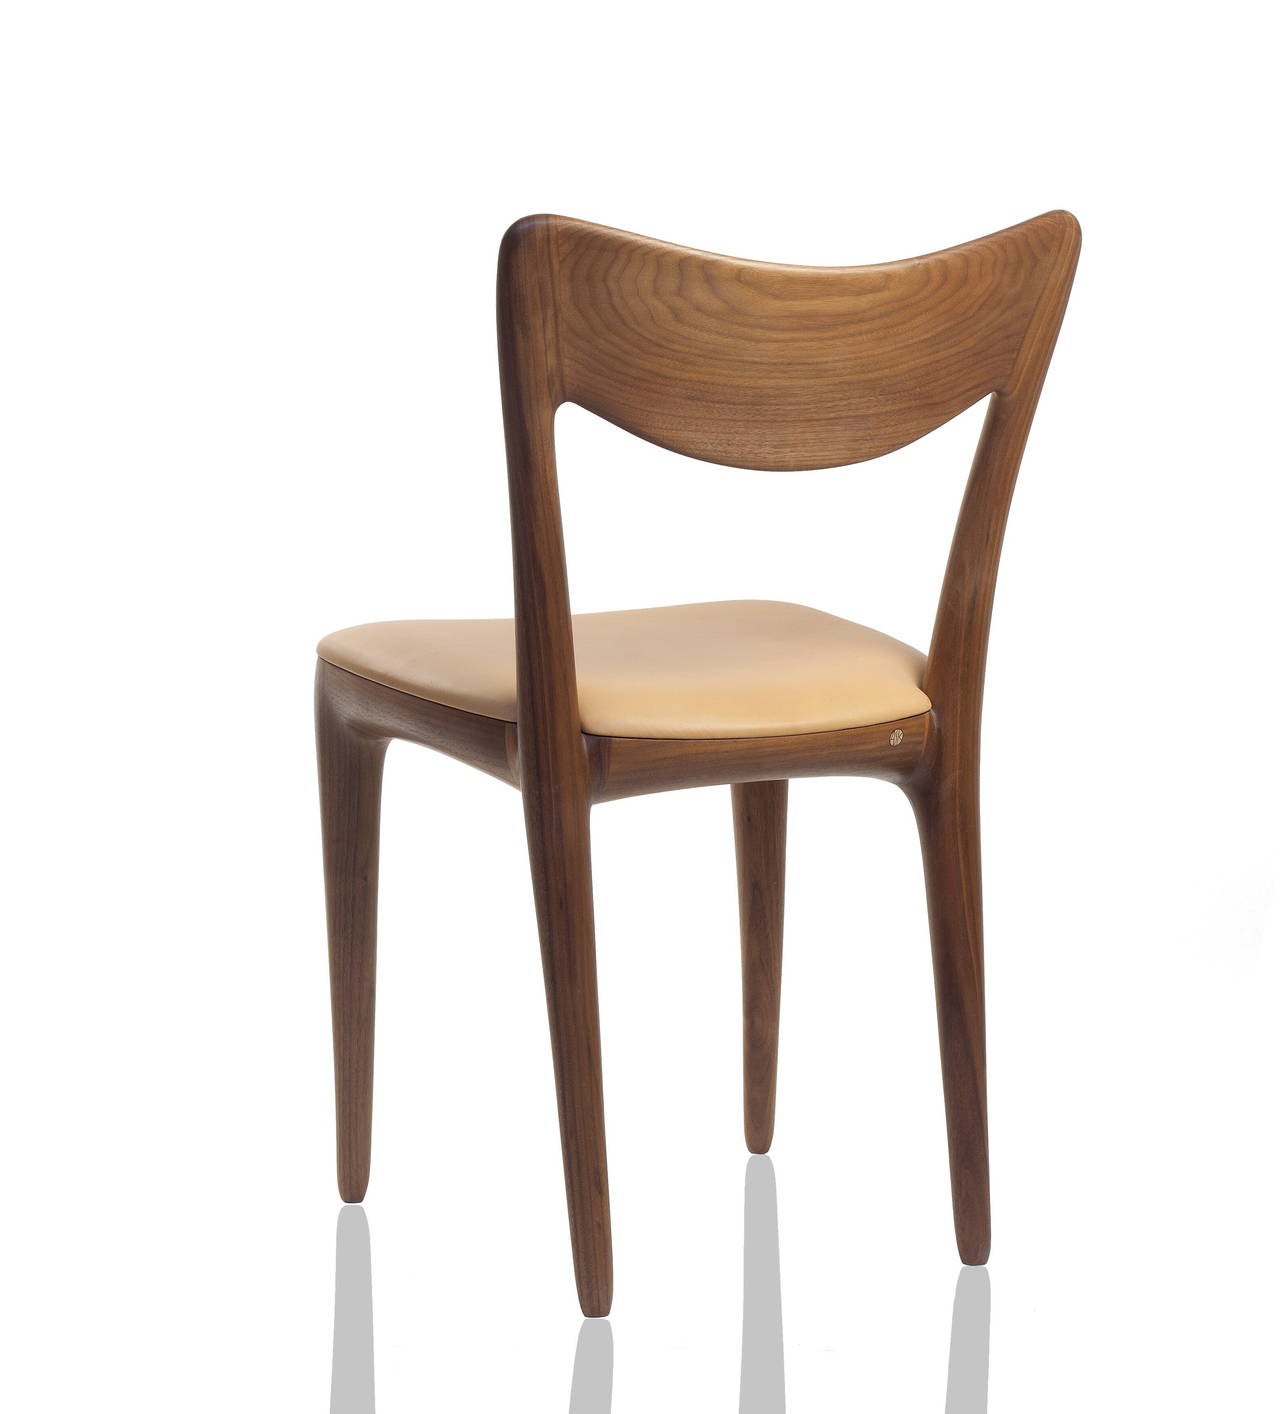 Chaises de salle à manger Kora, conçues et fabriquées personnellement à la main par Ask Emil Skovgaard, Danemark. Édition limitée.
Mesures : Hauteur du siège 45 cm, (17.7